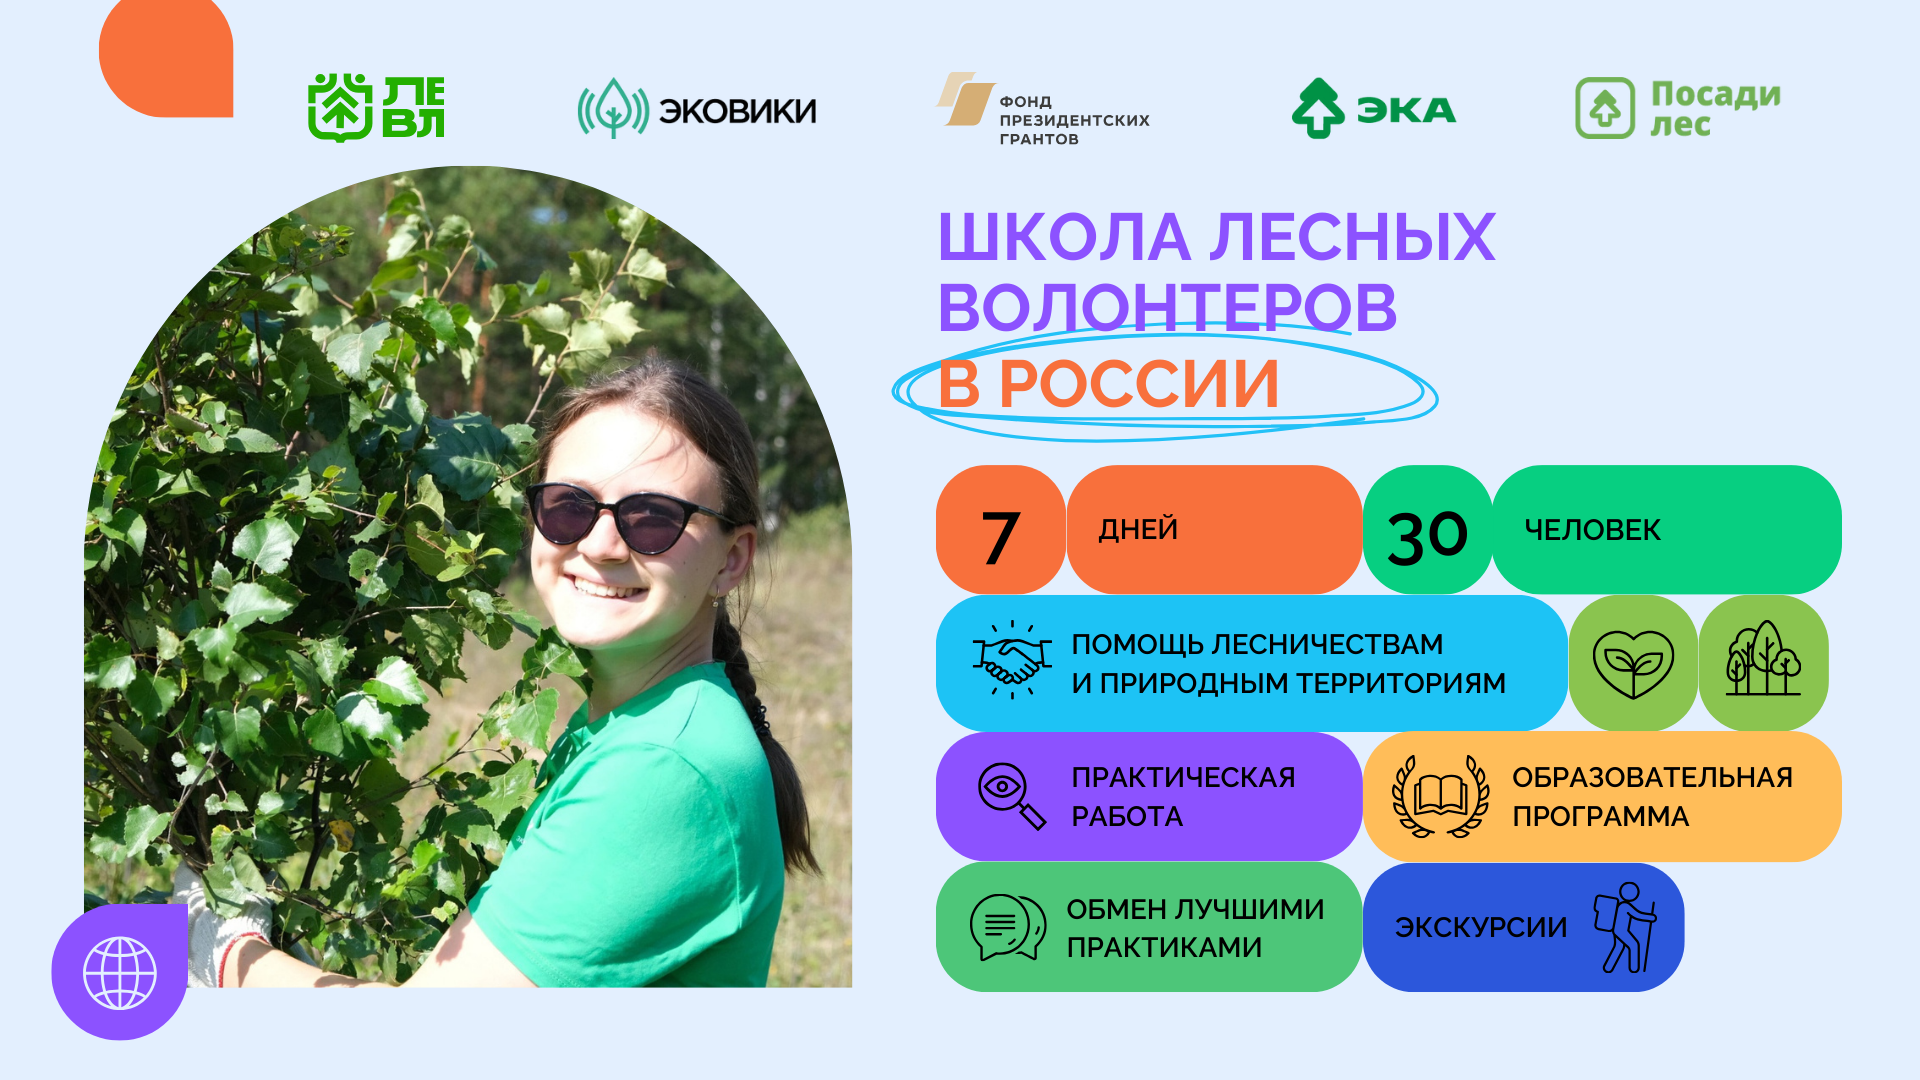 Движение ЭКА проведет международное обучение для экологических волонтеров России и СНГ - фото 1